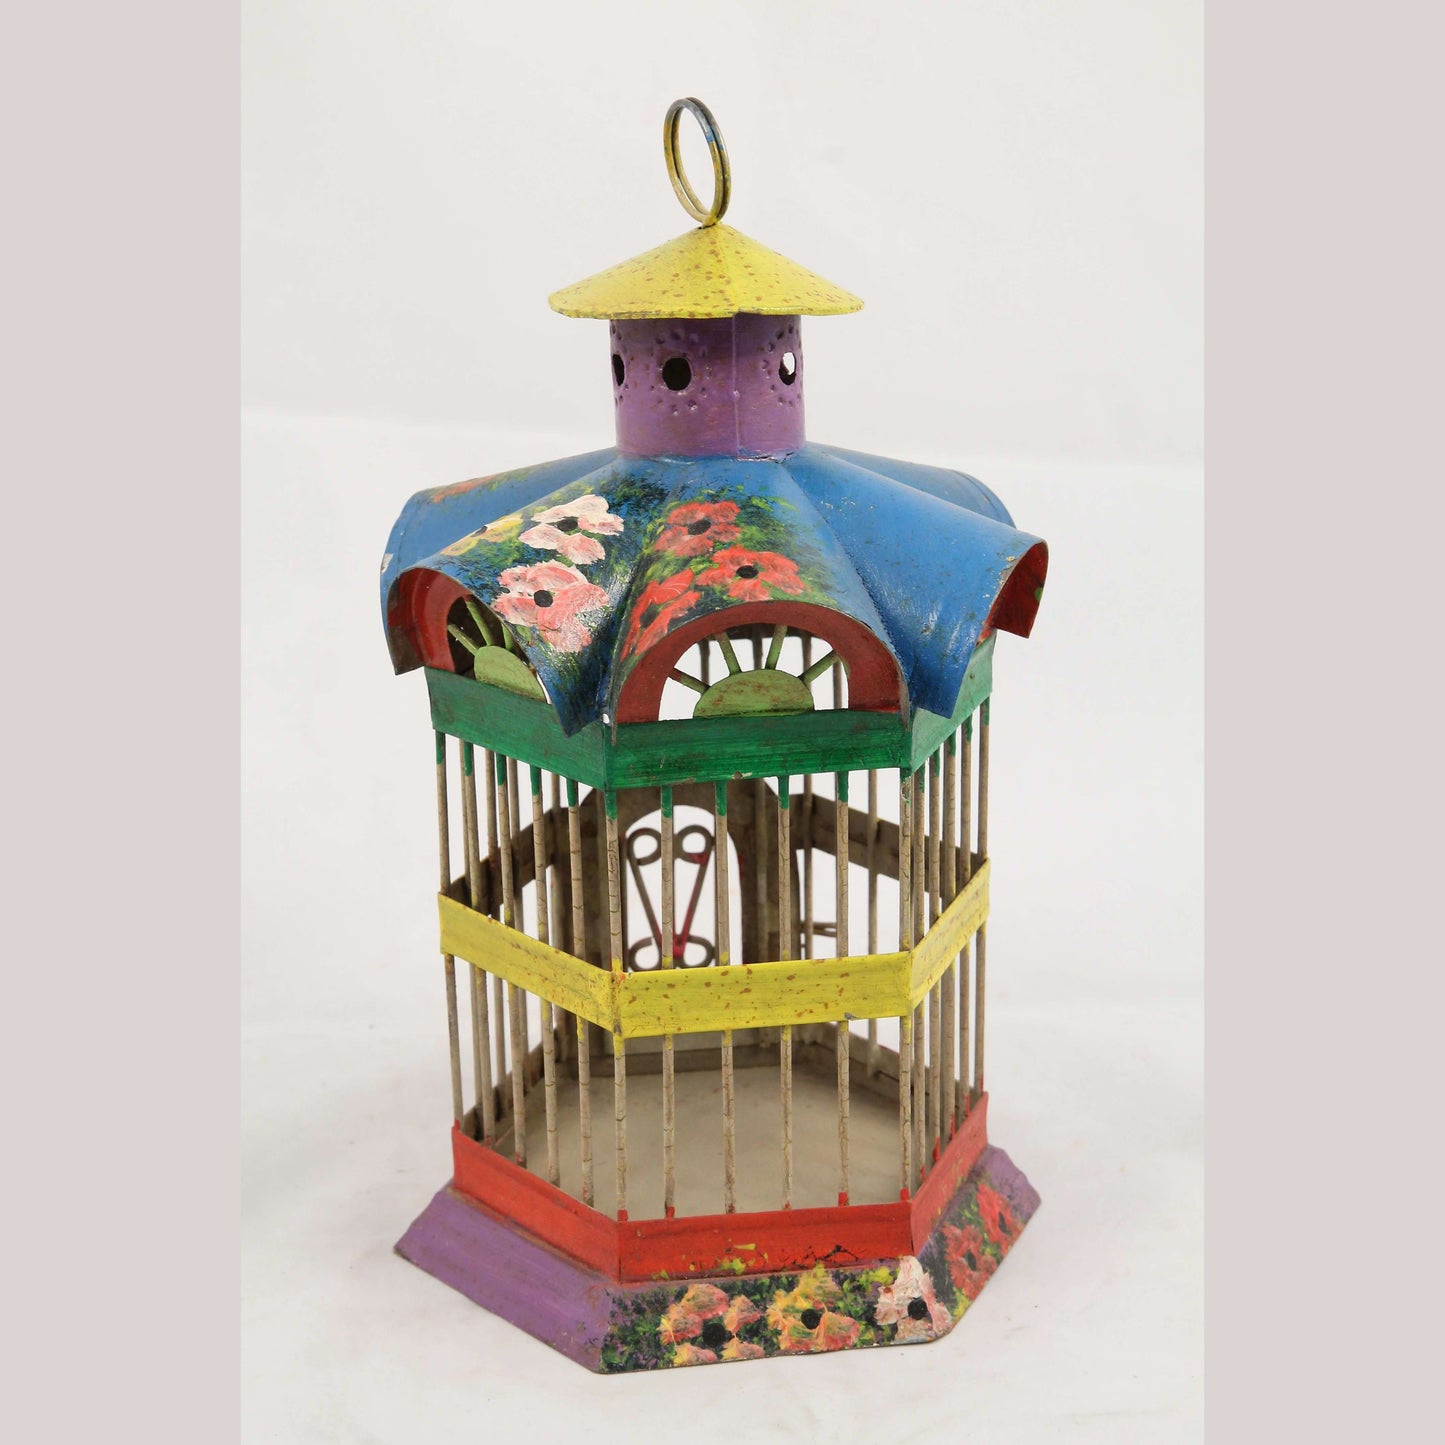 Tin Bird Cage Mexico Folk Art Collectible Décor Hand Painted Garden/Inside Use